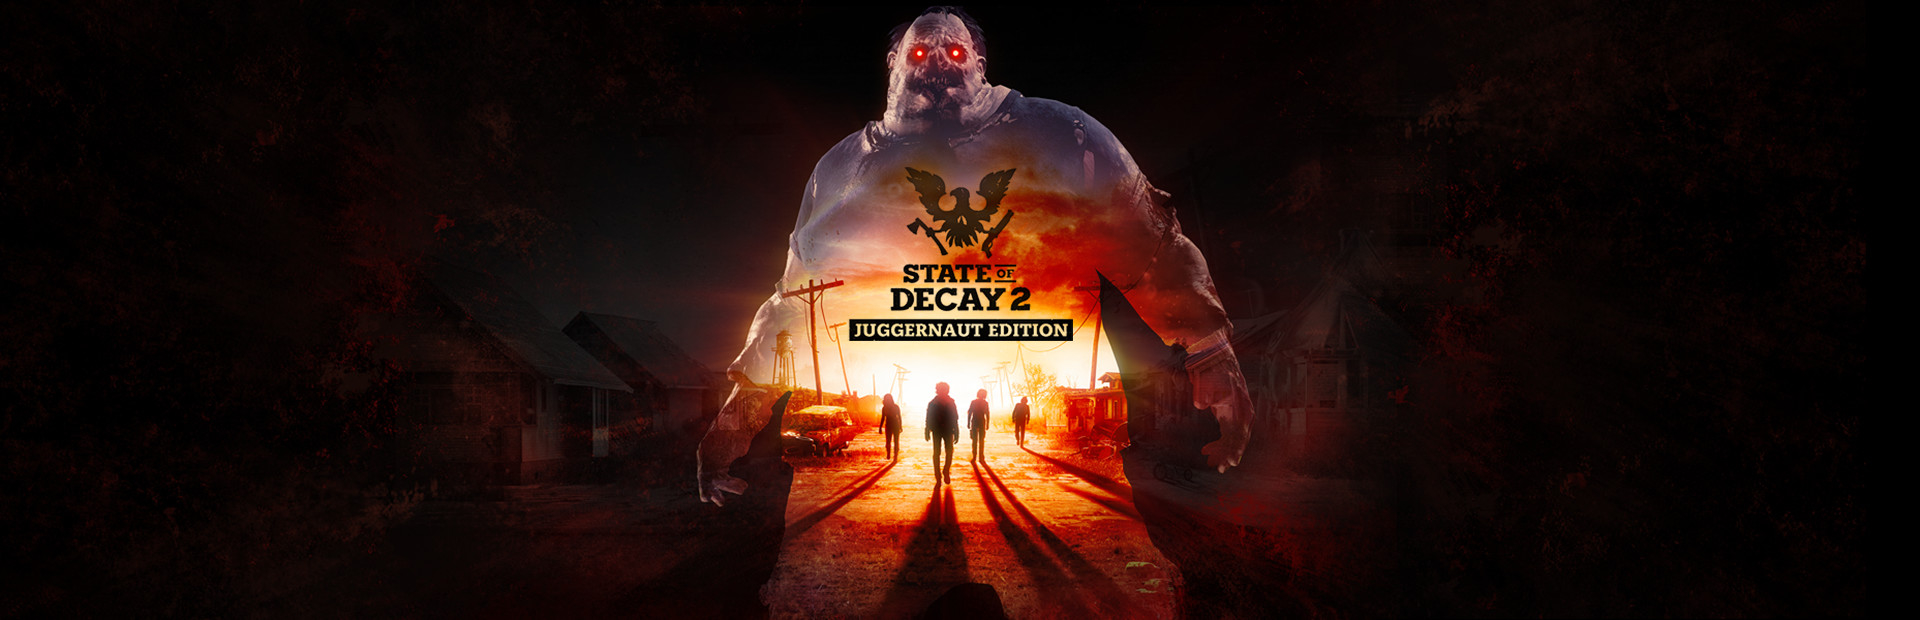 دانلود بازی State of Decay 2: Juggernaut Edition برای کامپیوتر | گیمباتو